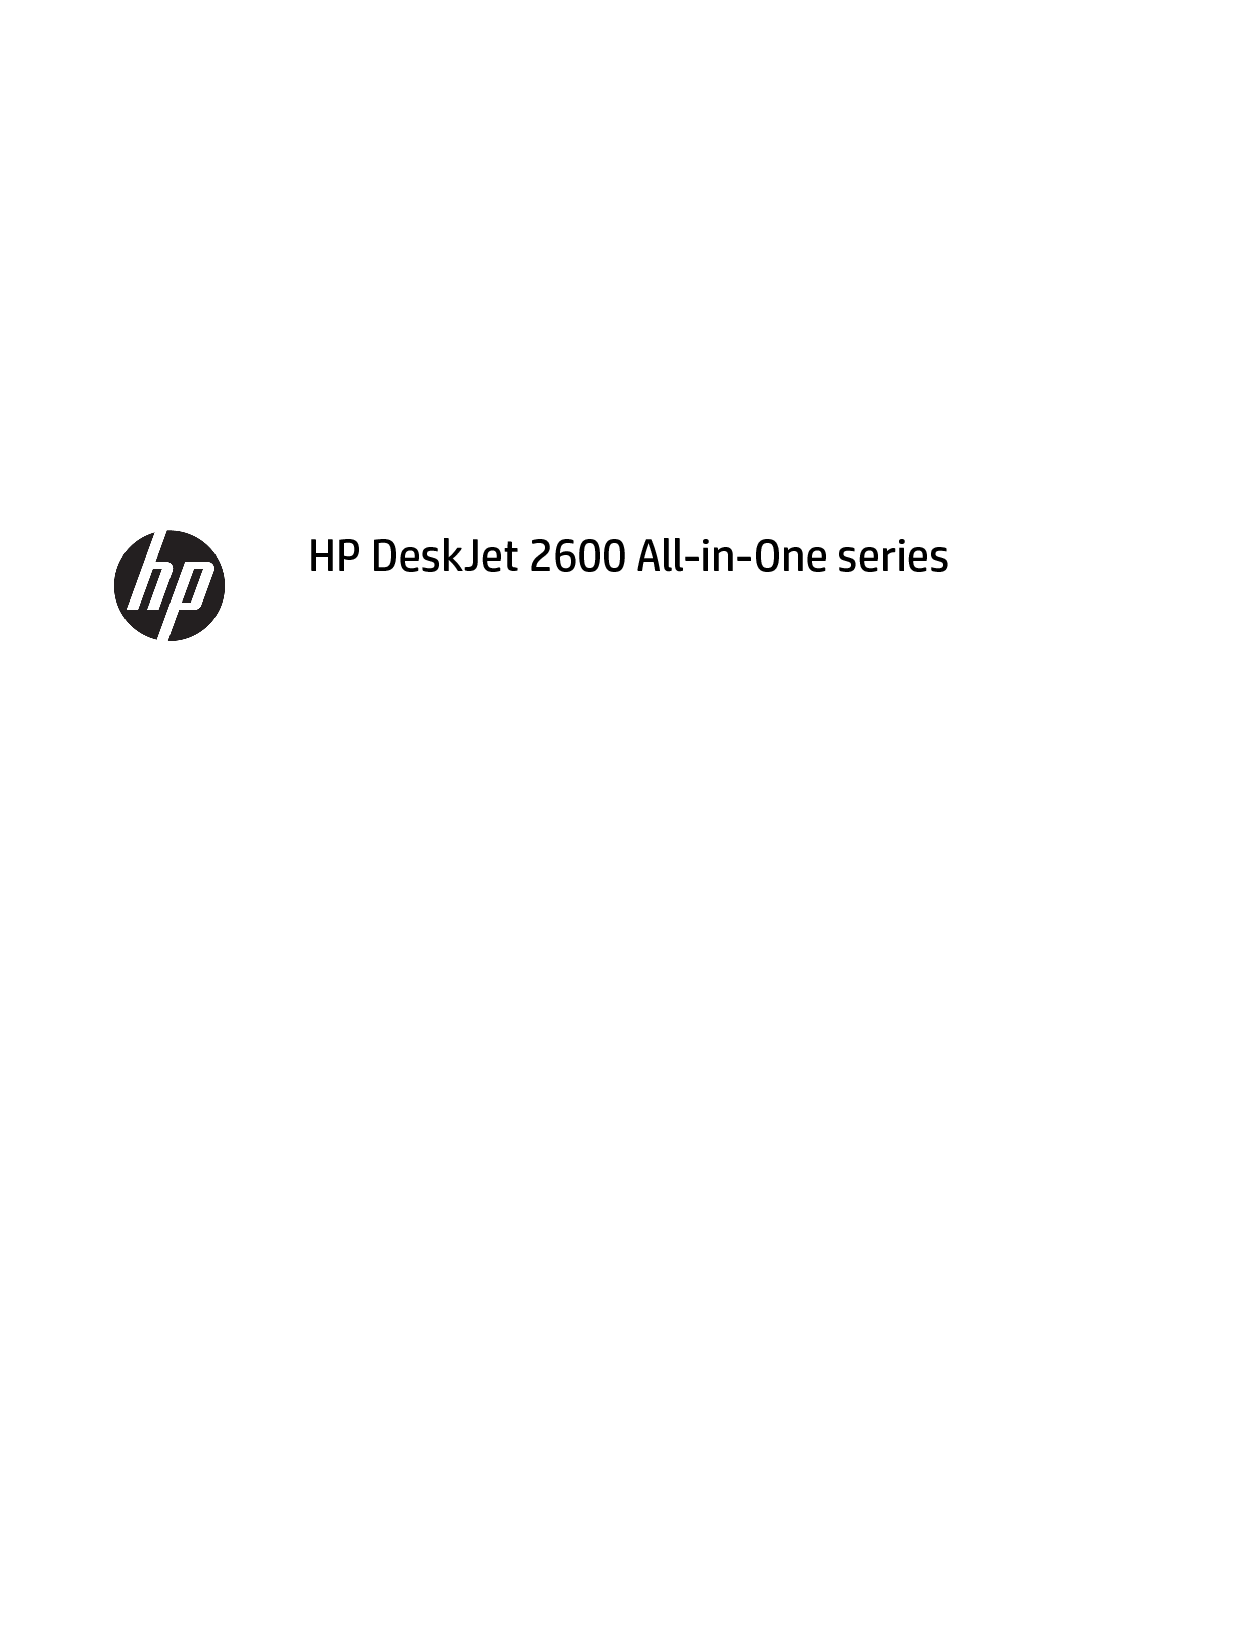 惠普 HP DeskJet 2600 用户指南 封面